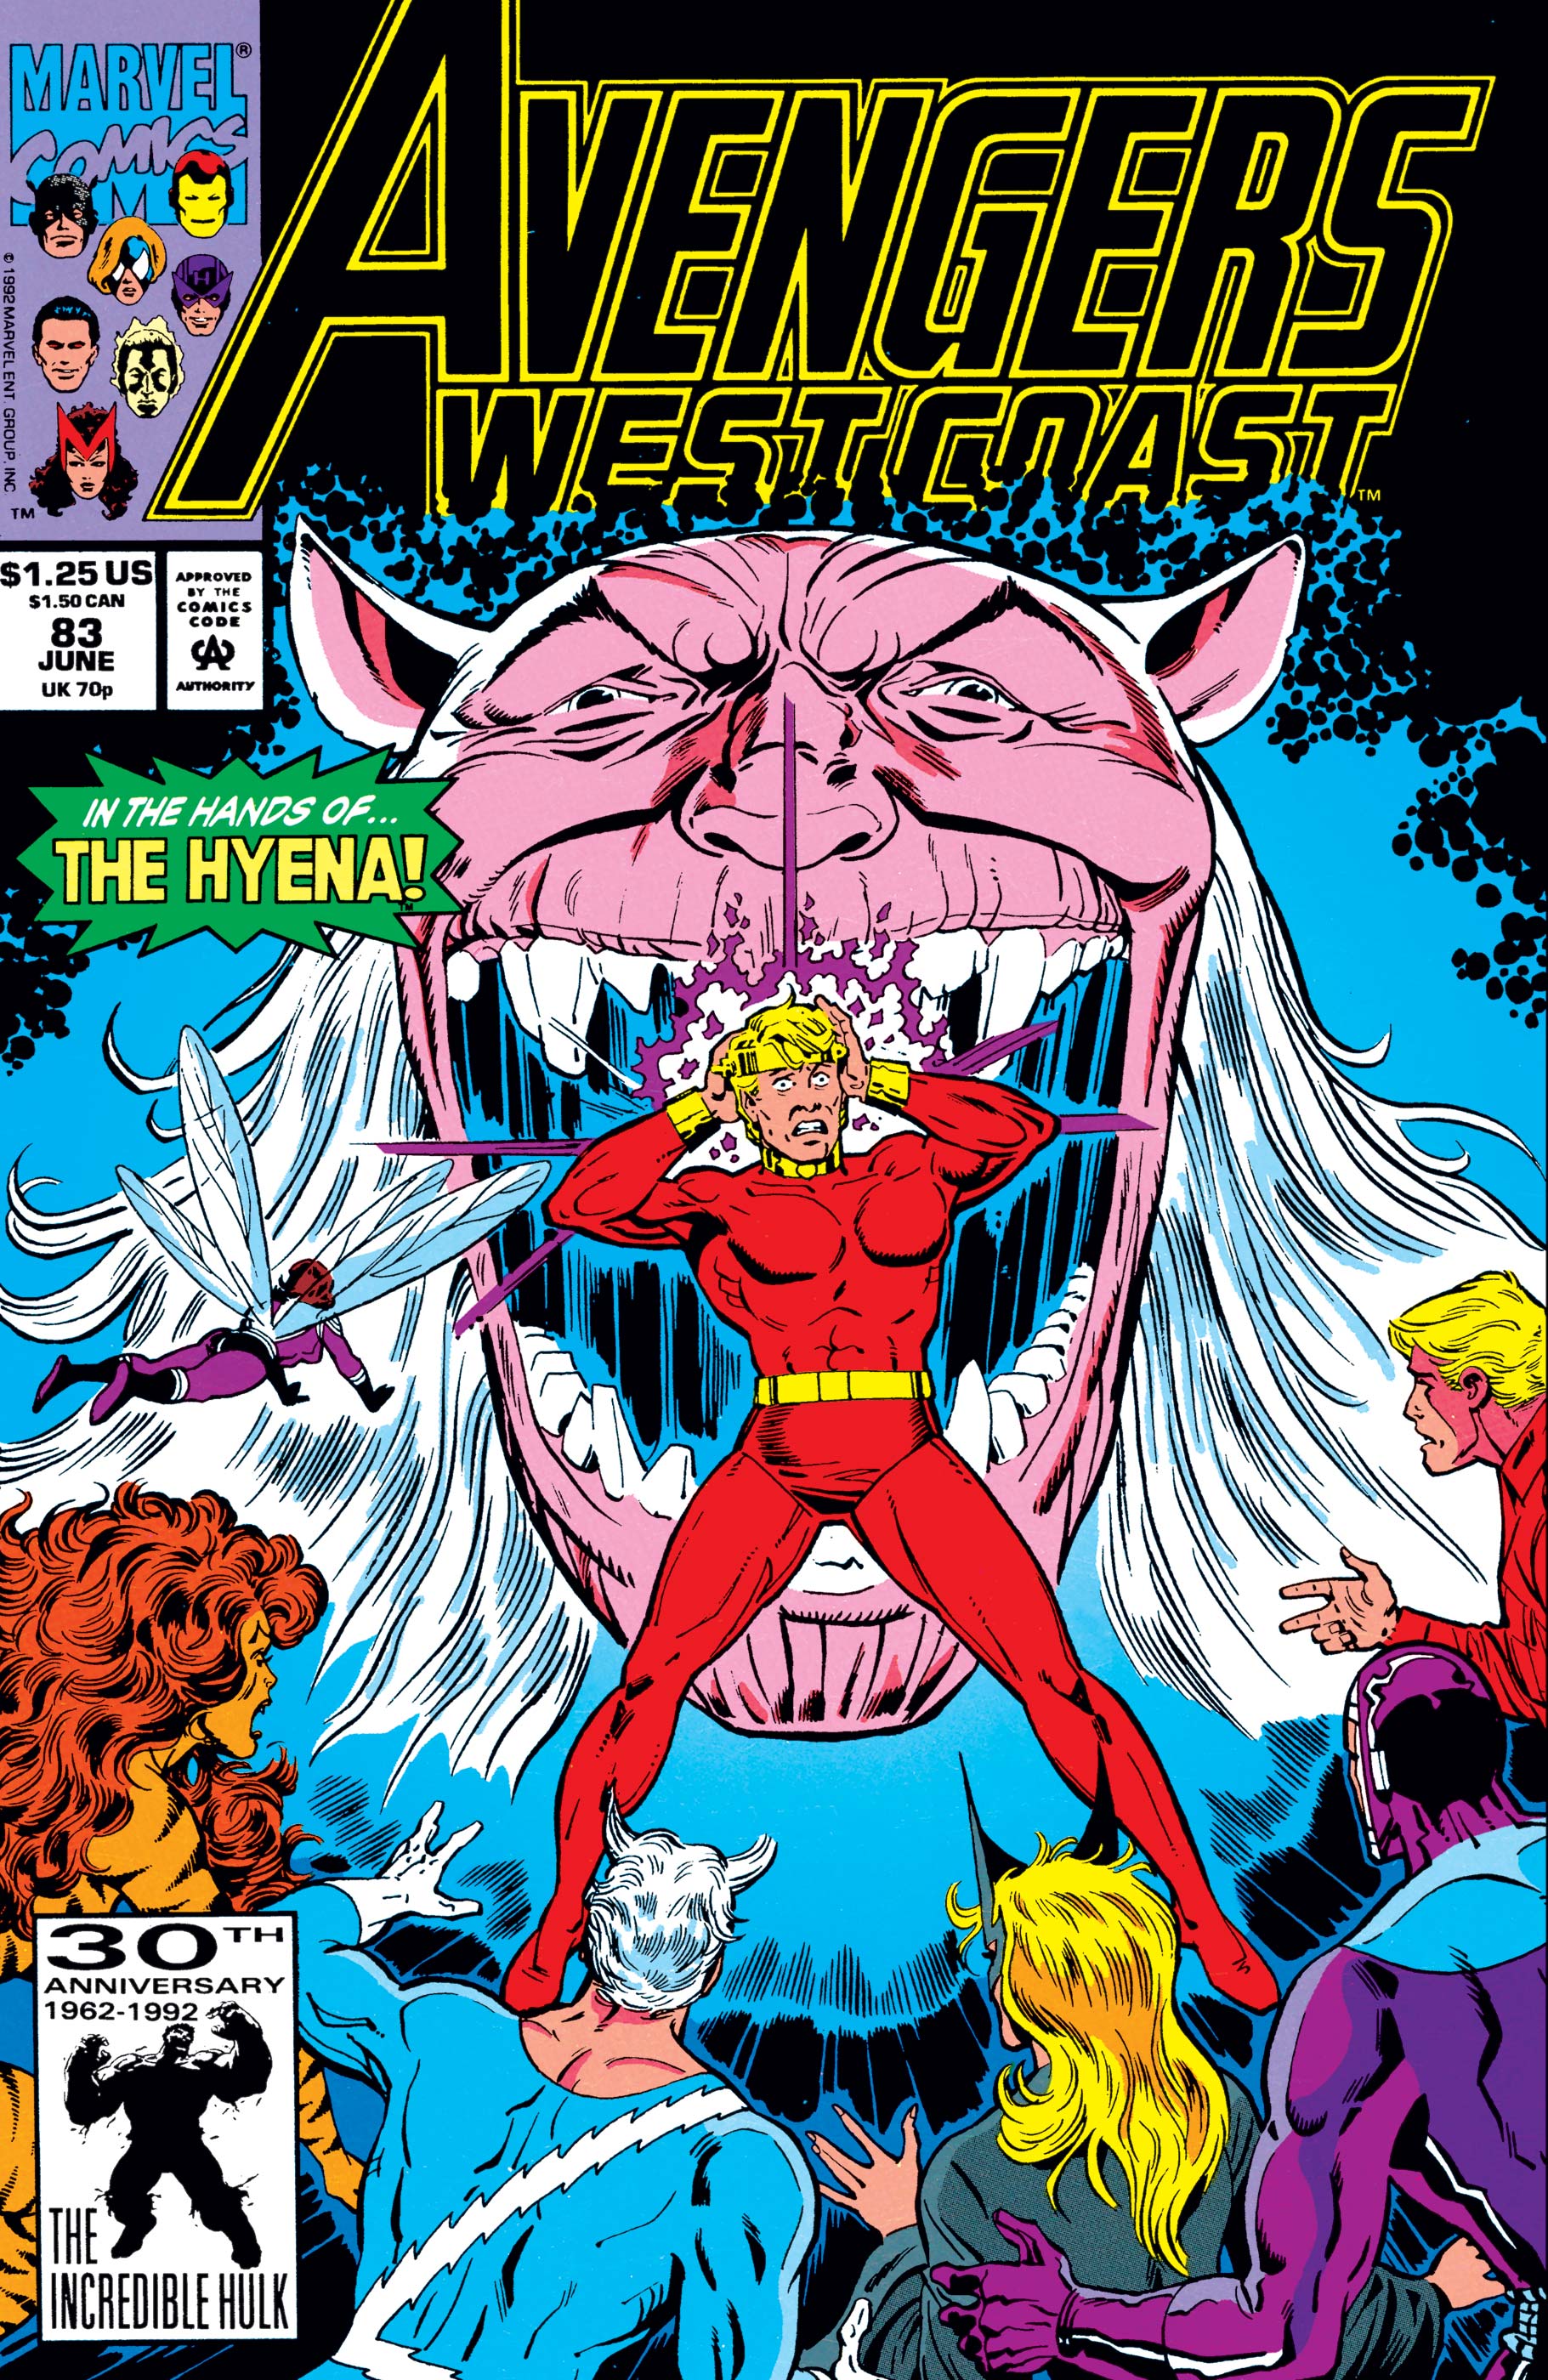 West Coast Avengers (1985) #83